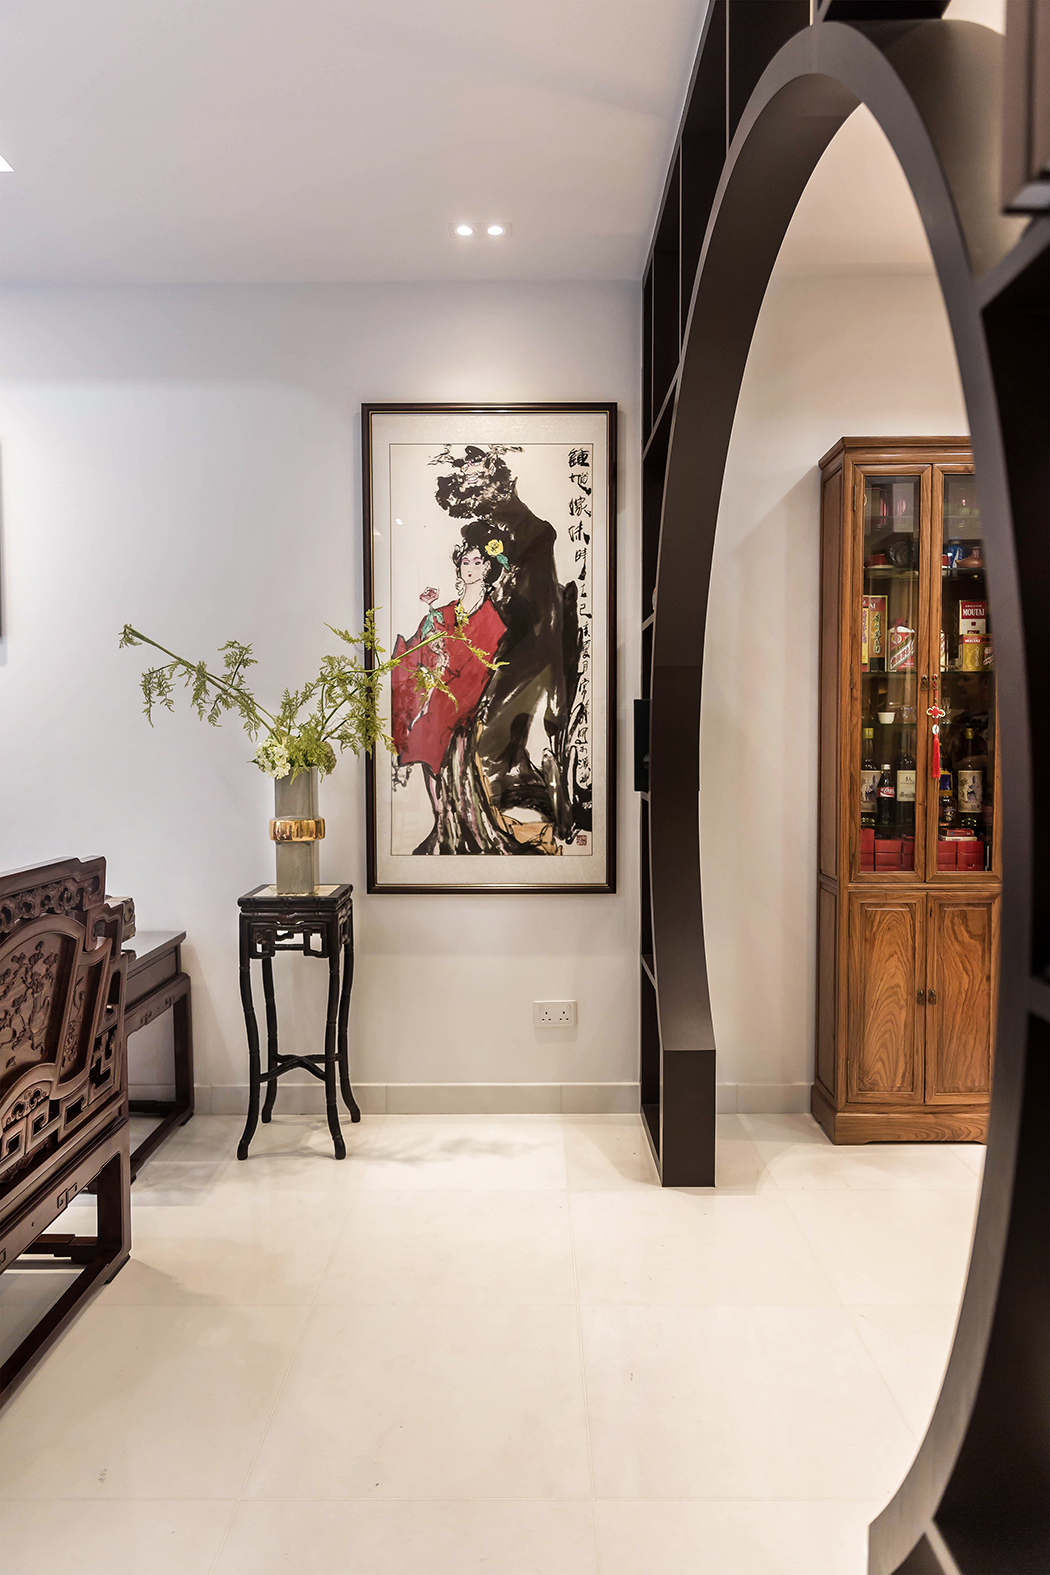 Oriental Design - Living Room - Landed House - Design by Noble Interior Design Pte Ltd